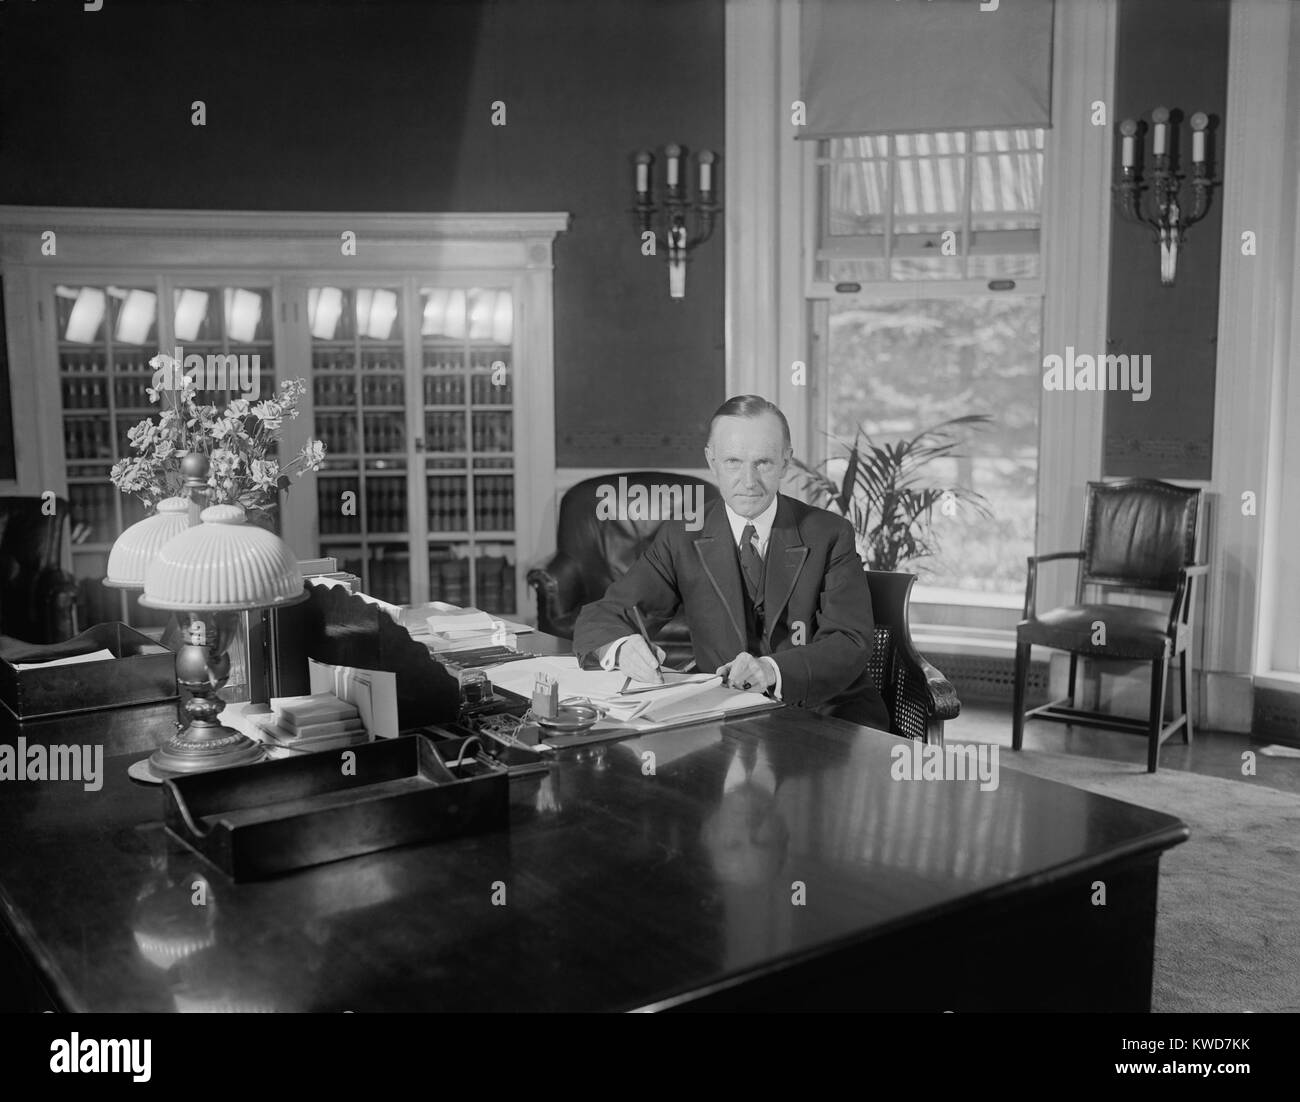 Presidente Calvin Coolidge alla stessa scrivania usata da Harding all Ufficio Ovale. La foto è stata pubblicata il 14 agosto 1923, meno di due settimane dopo la morte di Warren Harding. Firenze Harding era sconvolto che Coolidge sat a questo banco per i fotografi prima di Warren Harding's corpo tornato alla Casa Bianca. (BSLOC 2015 15 97) Foto Stock